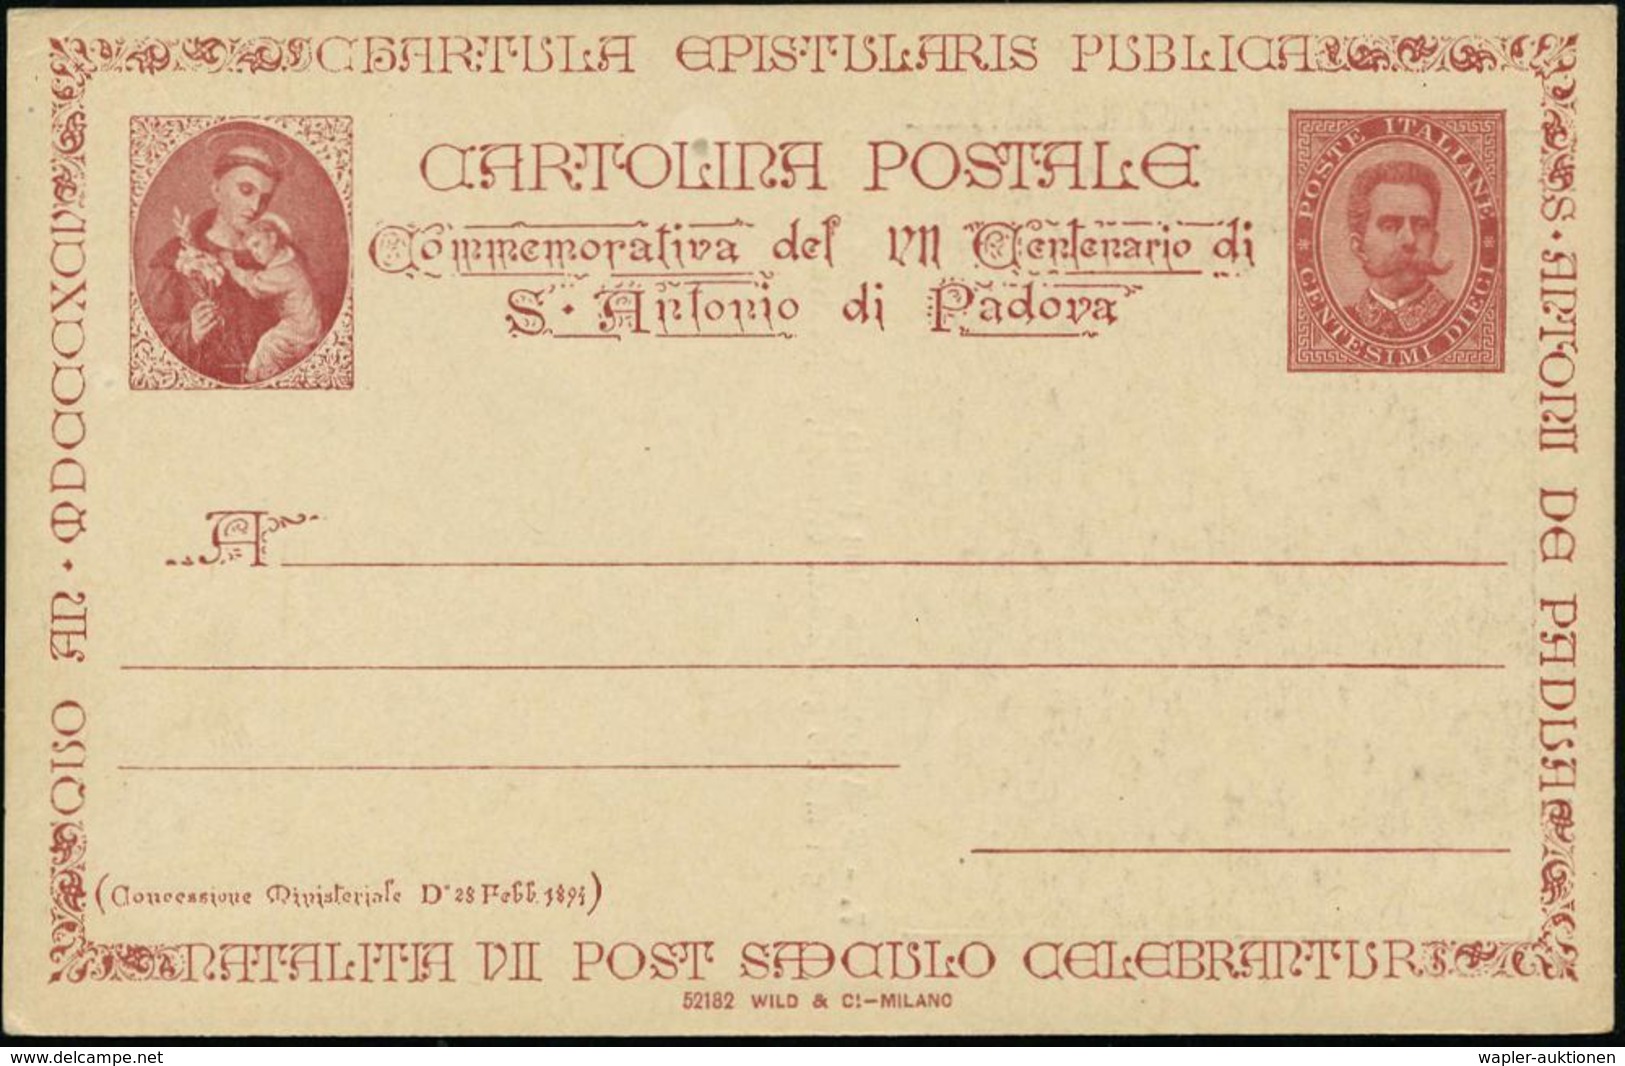 ITALIEN 1894 PP 10 C. Umberto I., Braun: 700-Jahrfeier St. Antonius Von Padova, Bild 7 , Rs.: S. Antonius Infantem Pauci - Cristianesimo